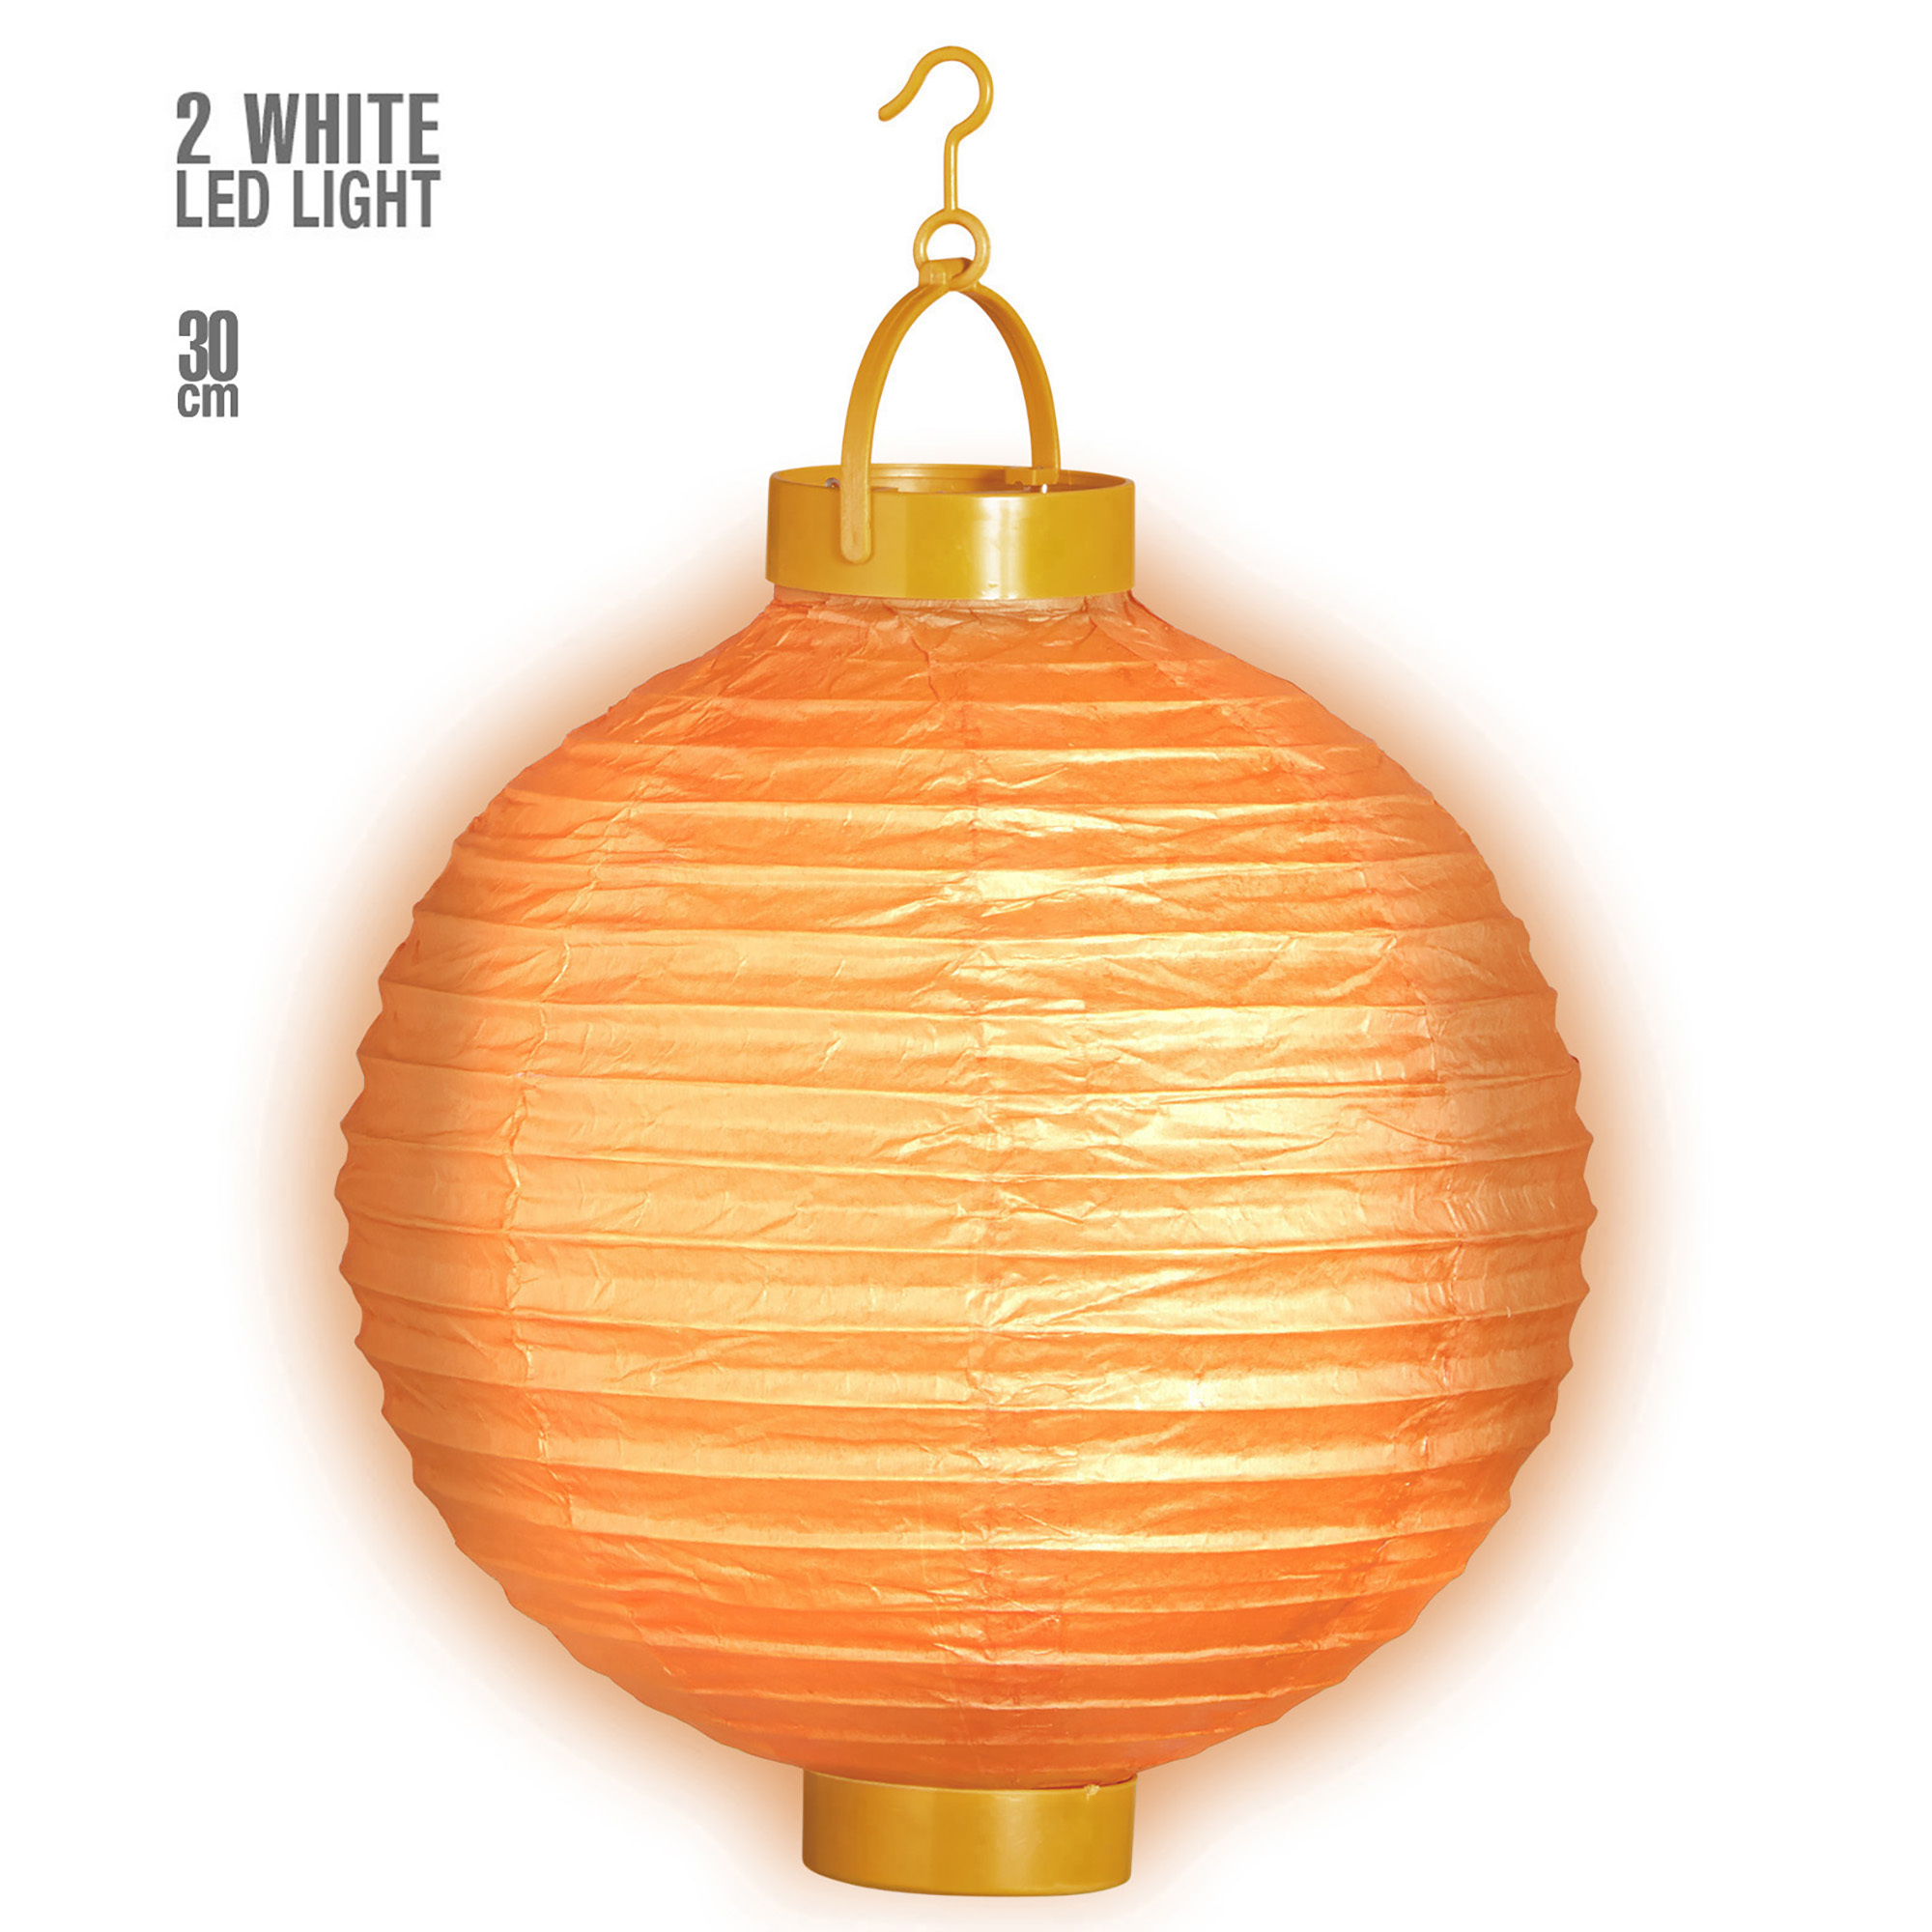 lampion met licht 30cm oranje